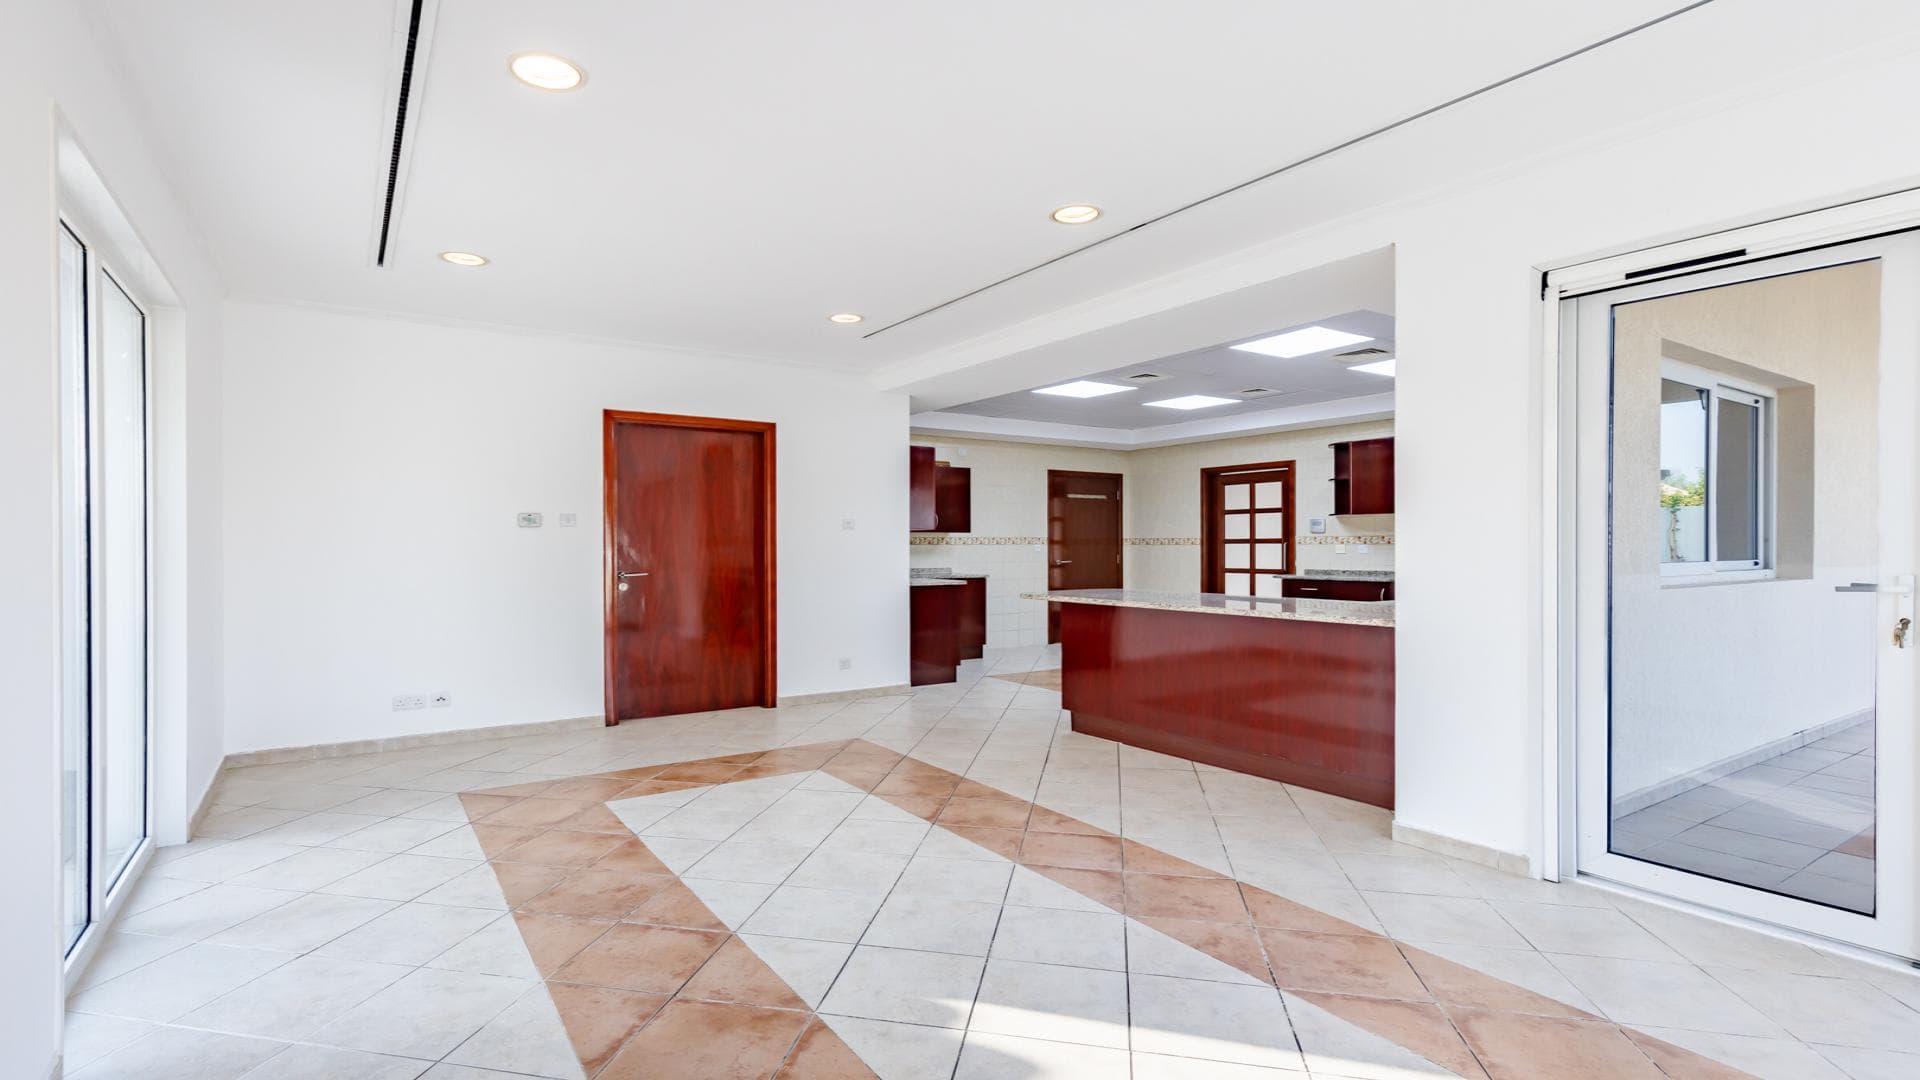 5 Bedroom Villa For Rent Al Thamam 36 Lp39013 1cea80d65a216800.jpg